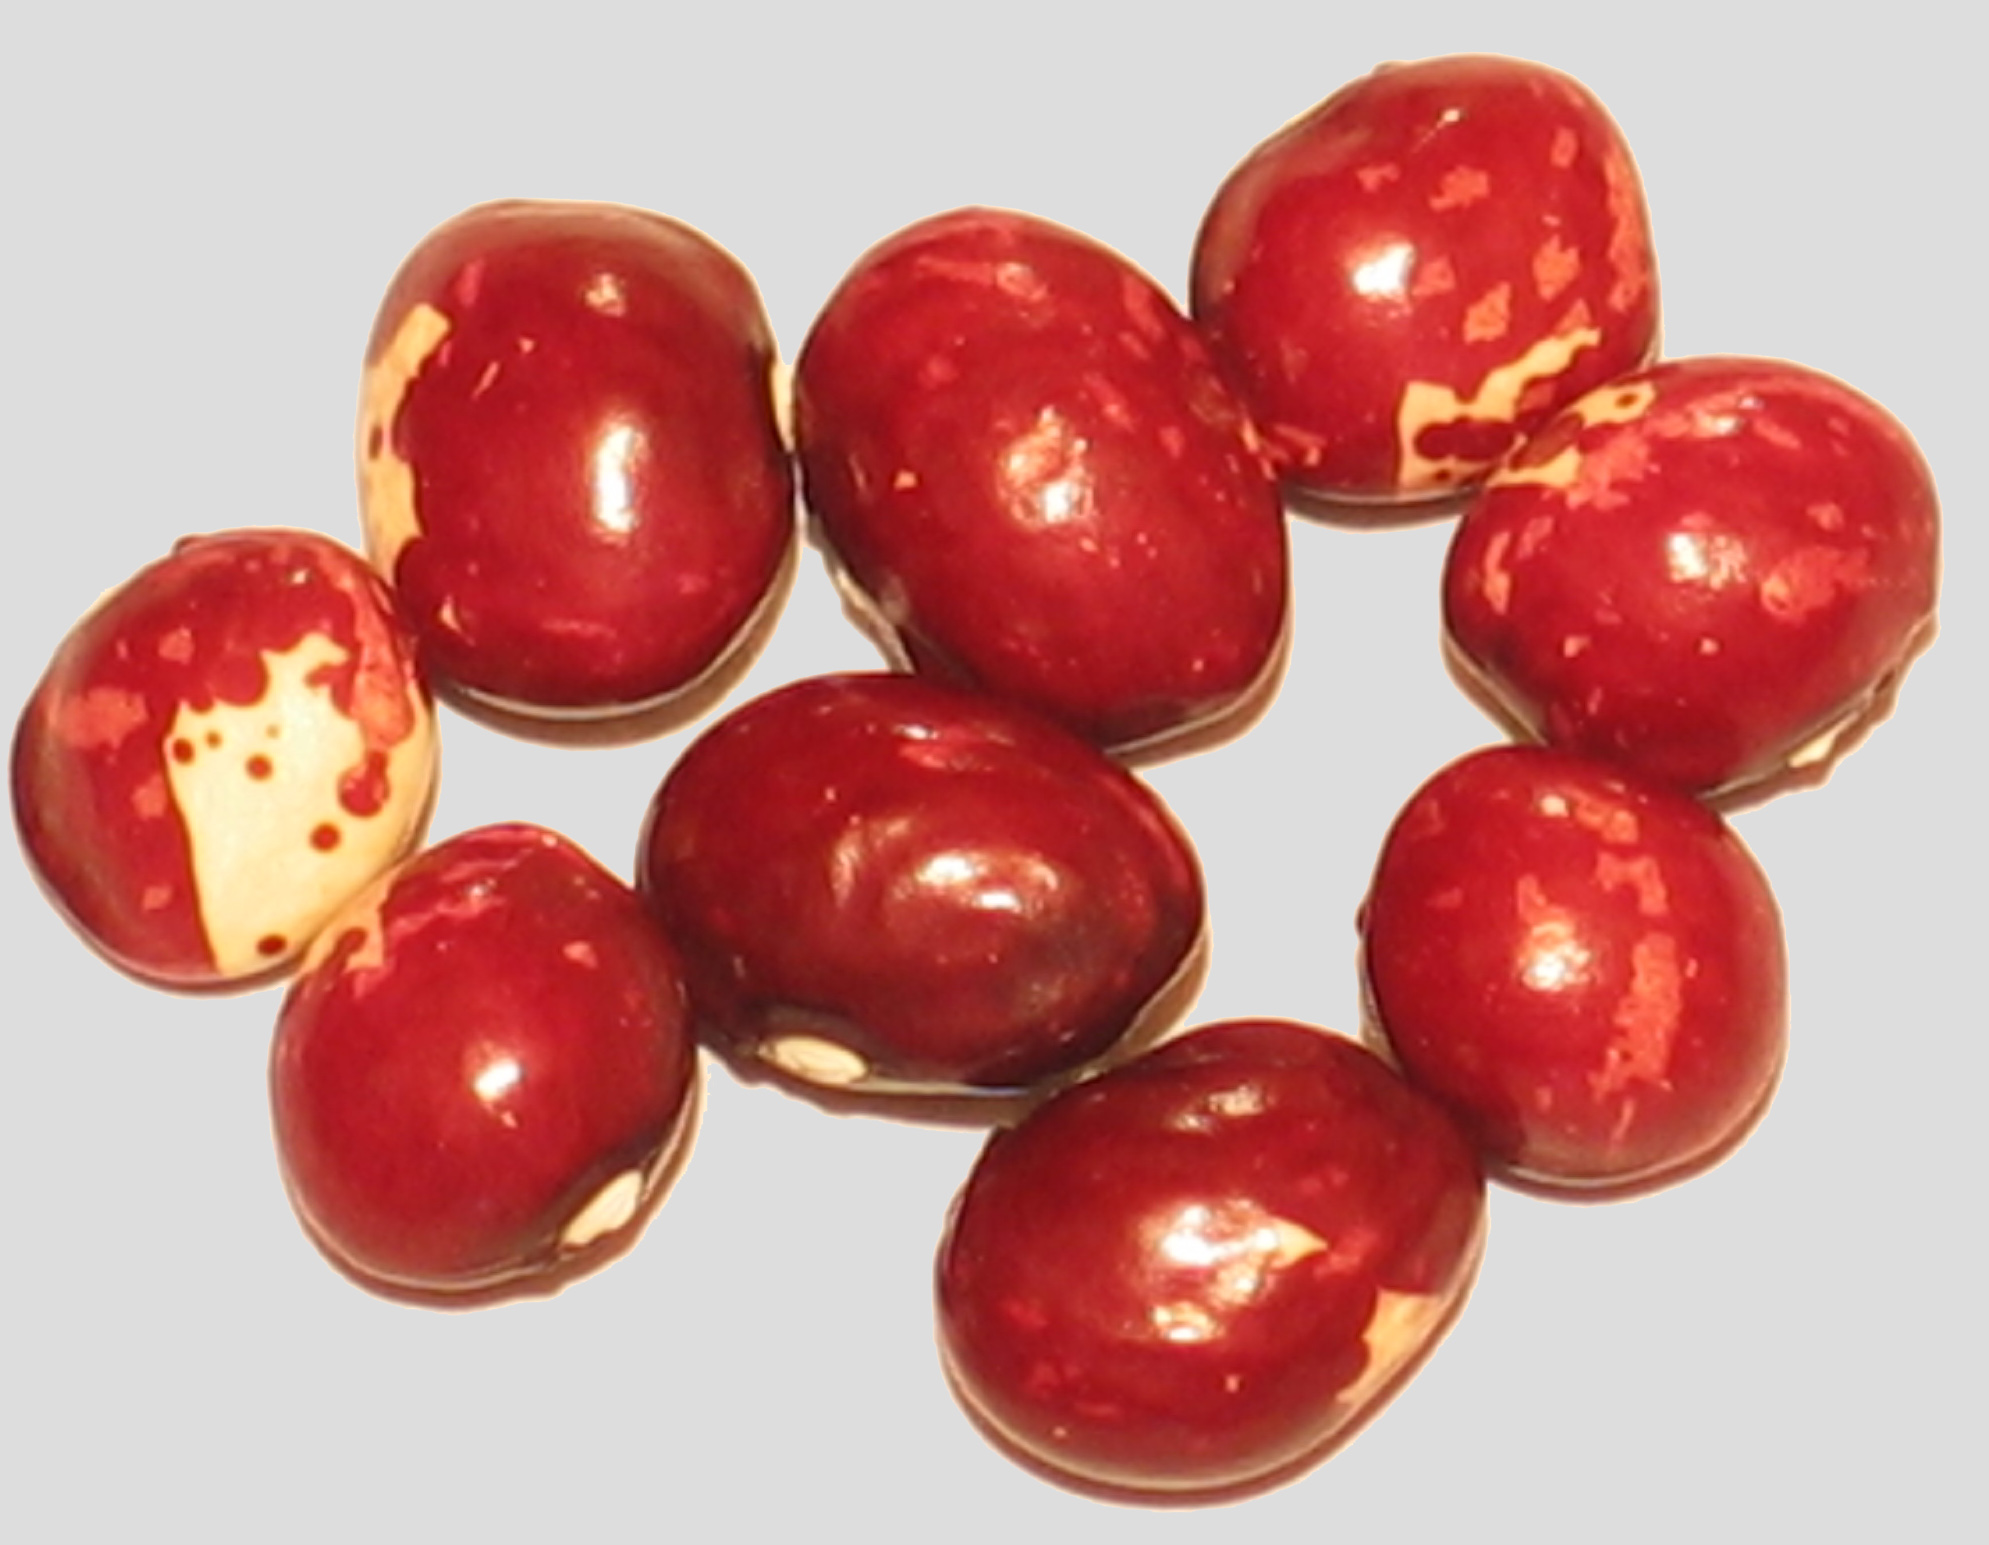 image of Woodruff beans